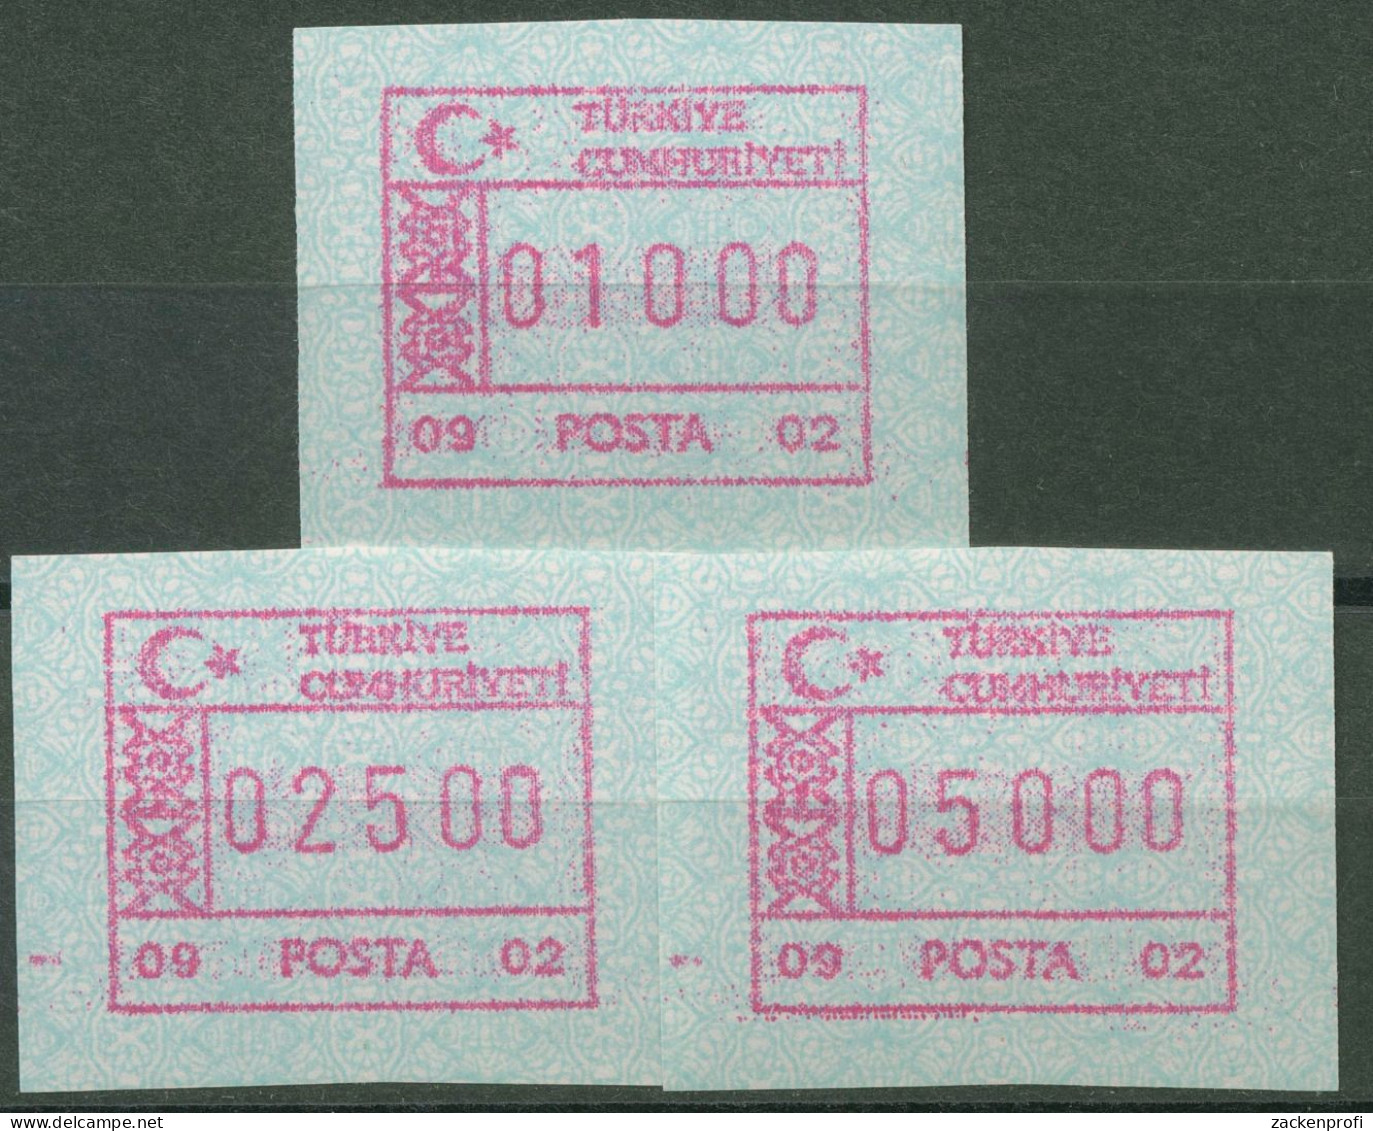 Türkei ATM 1992 Ornamente Automat 09 02, Satz 3 Werte ATM 2.6 S Postfrisch - Automaten